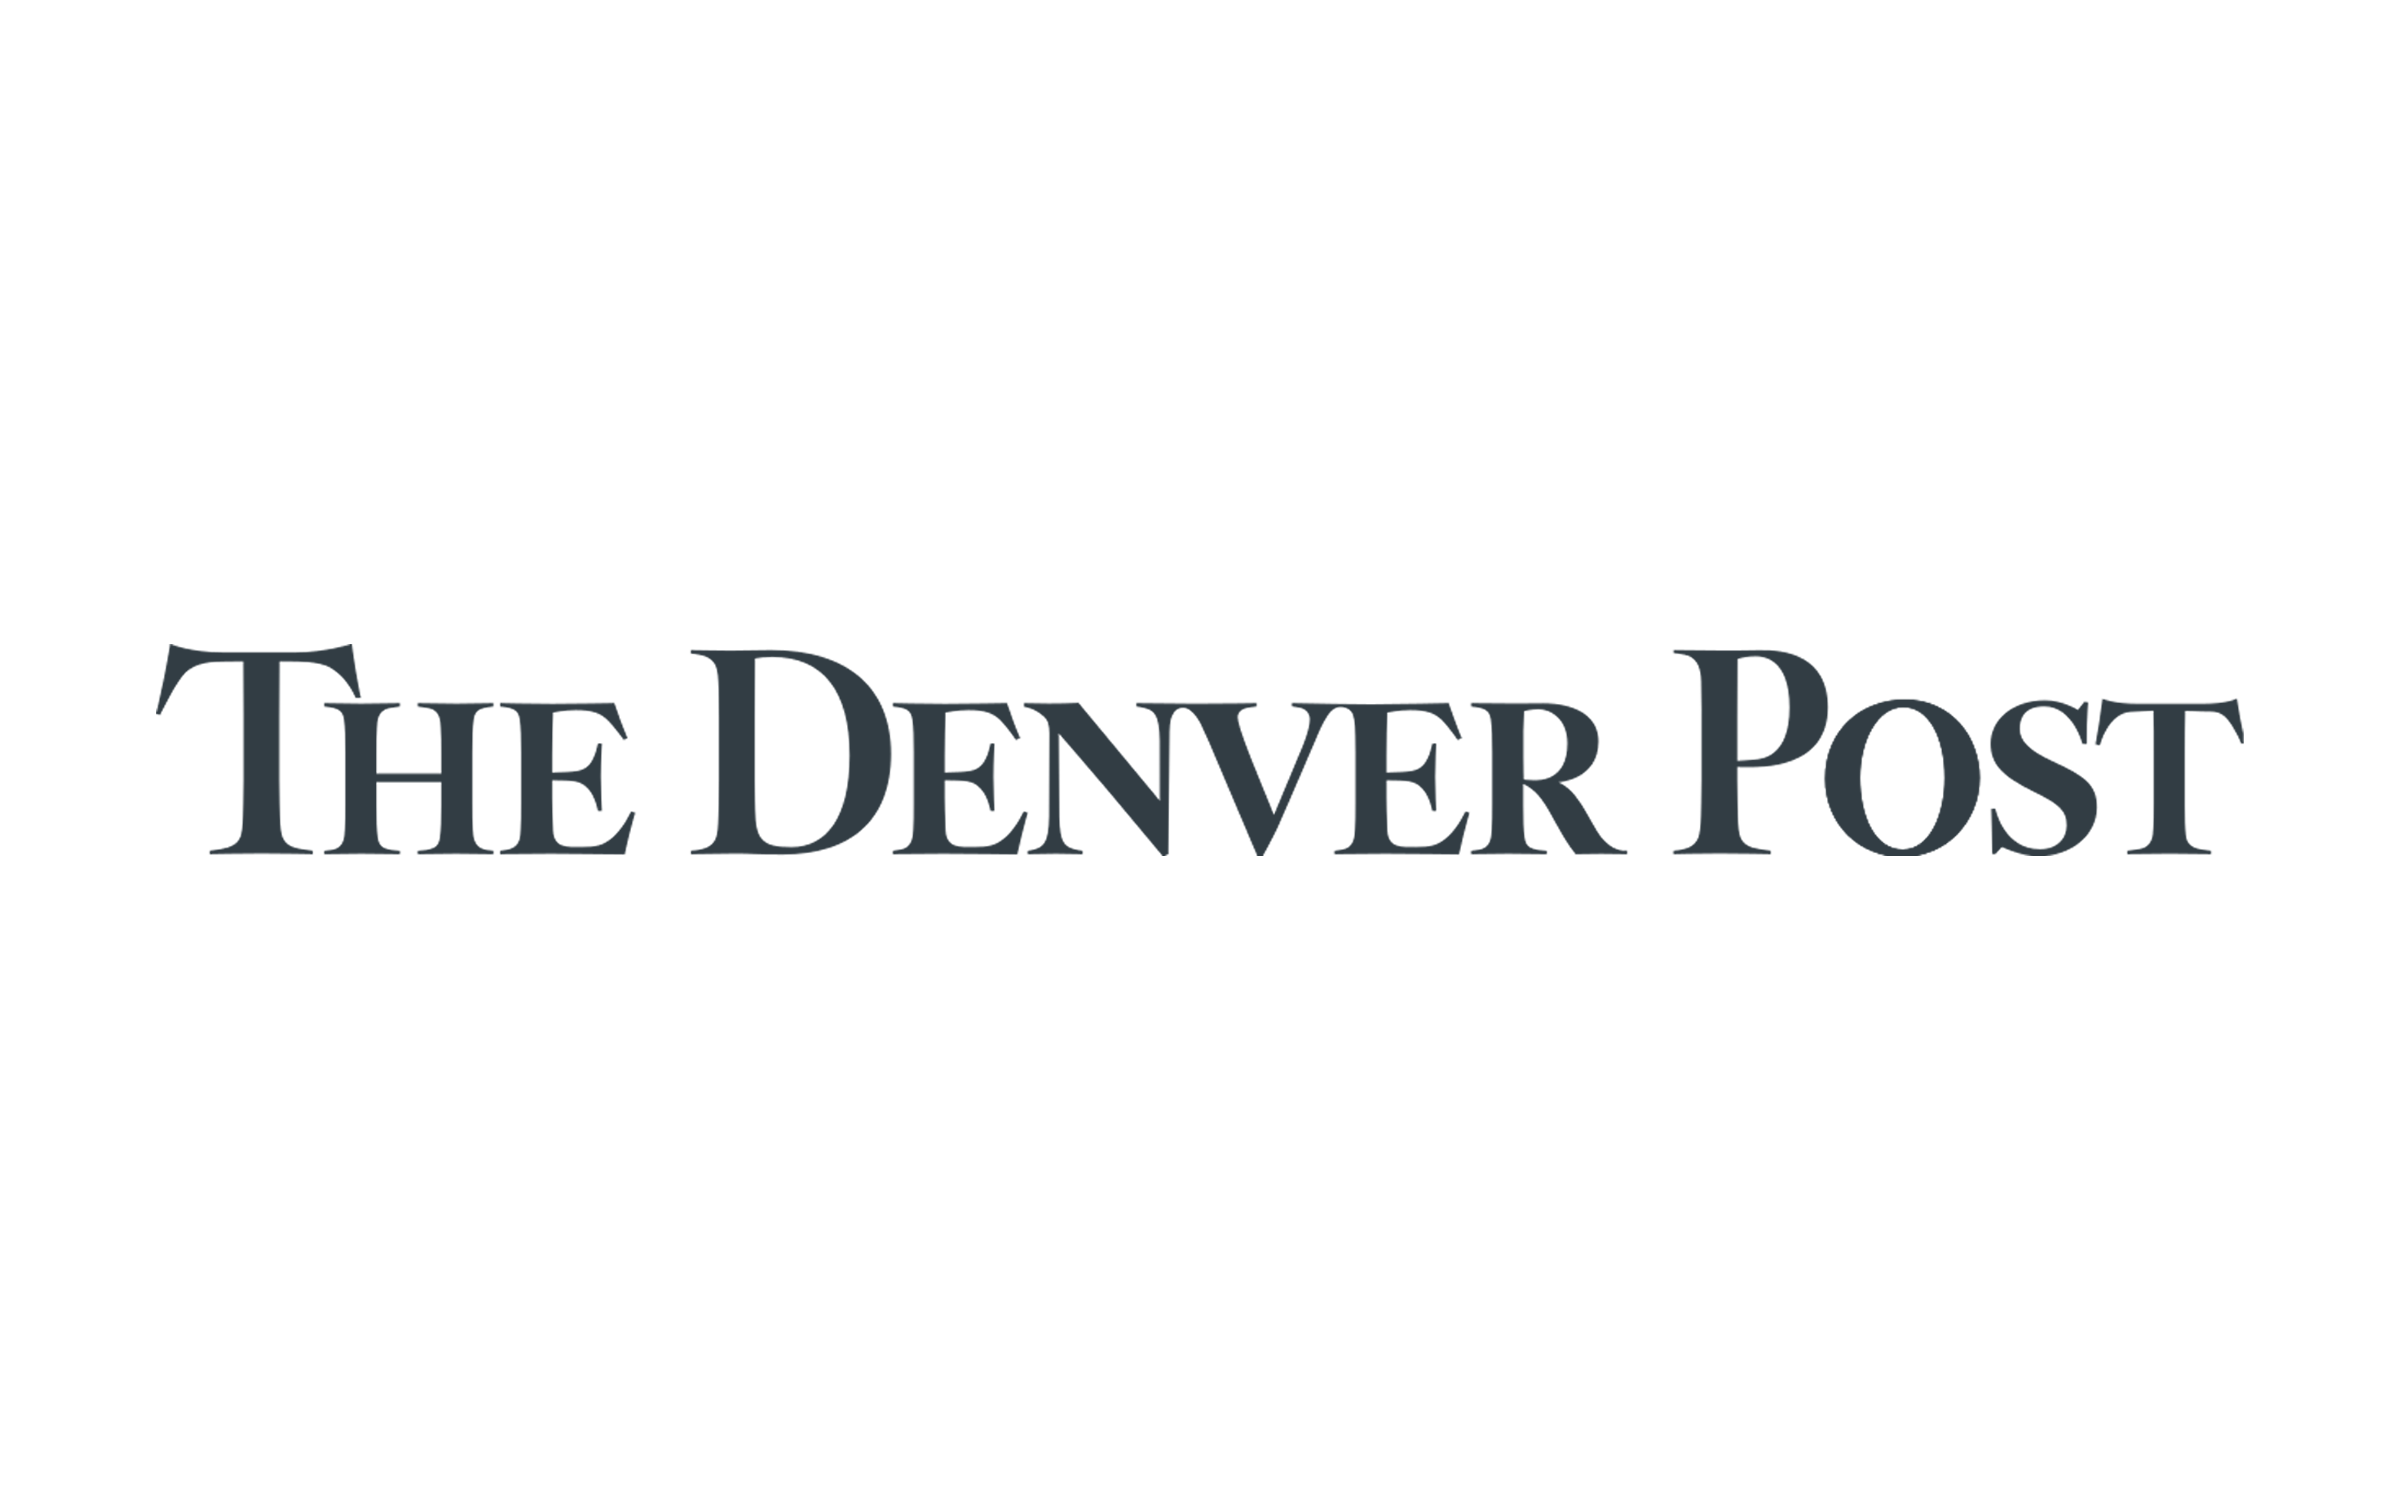 The Denver Post logo